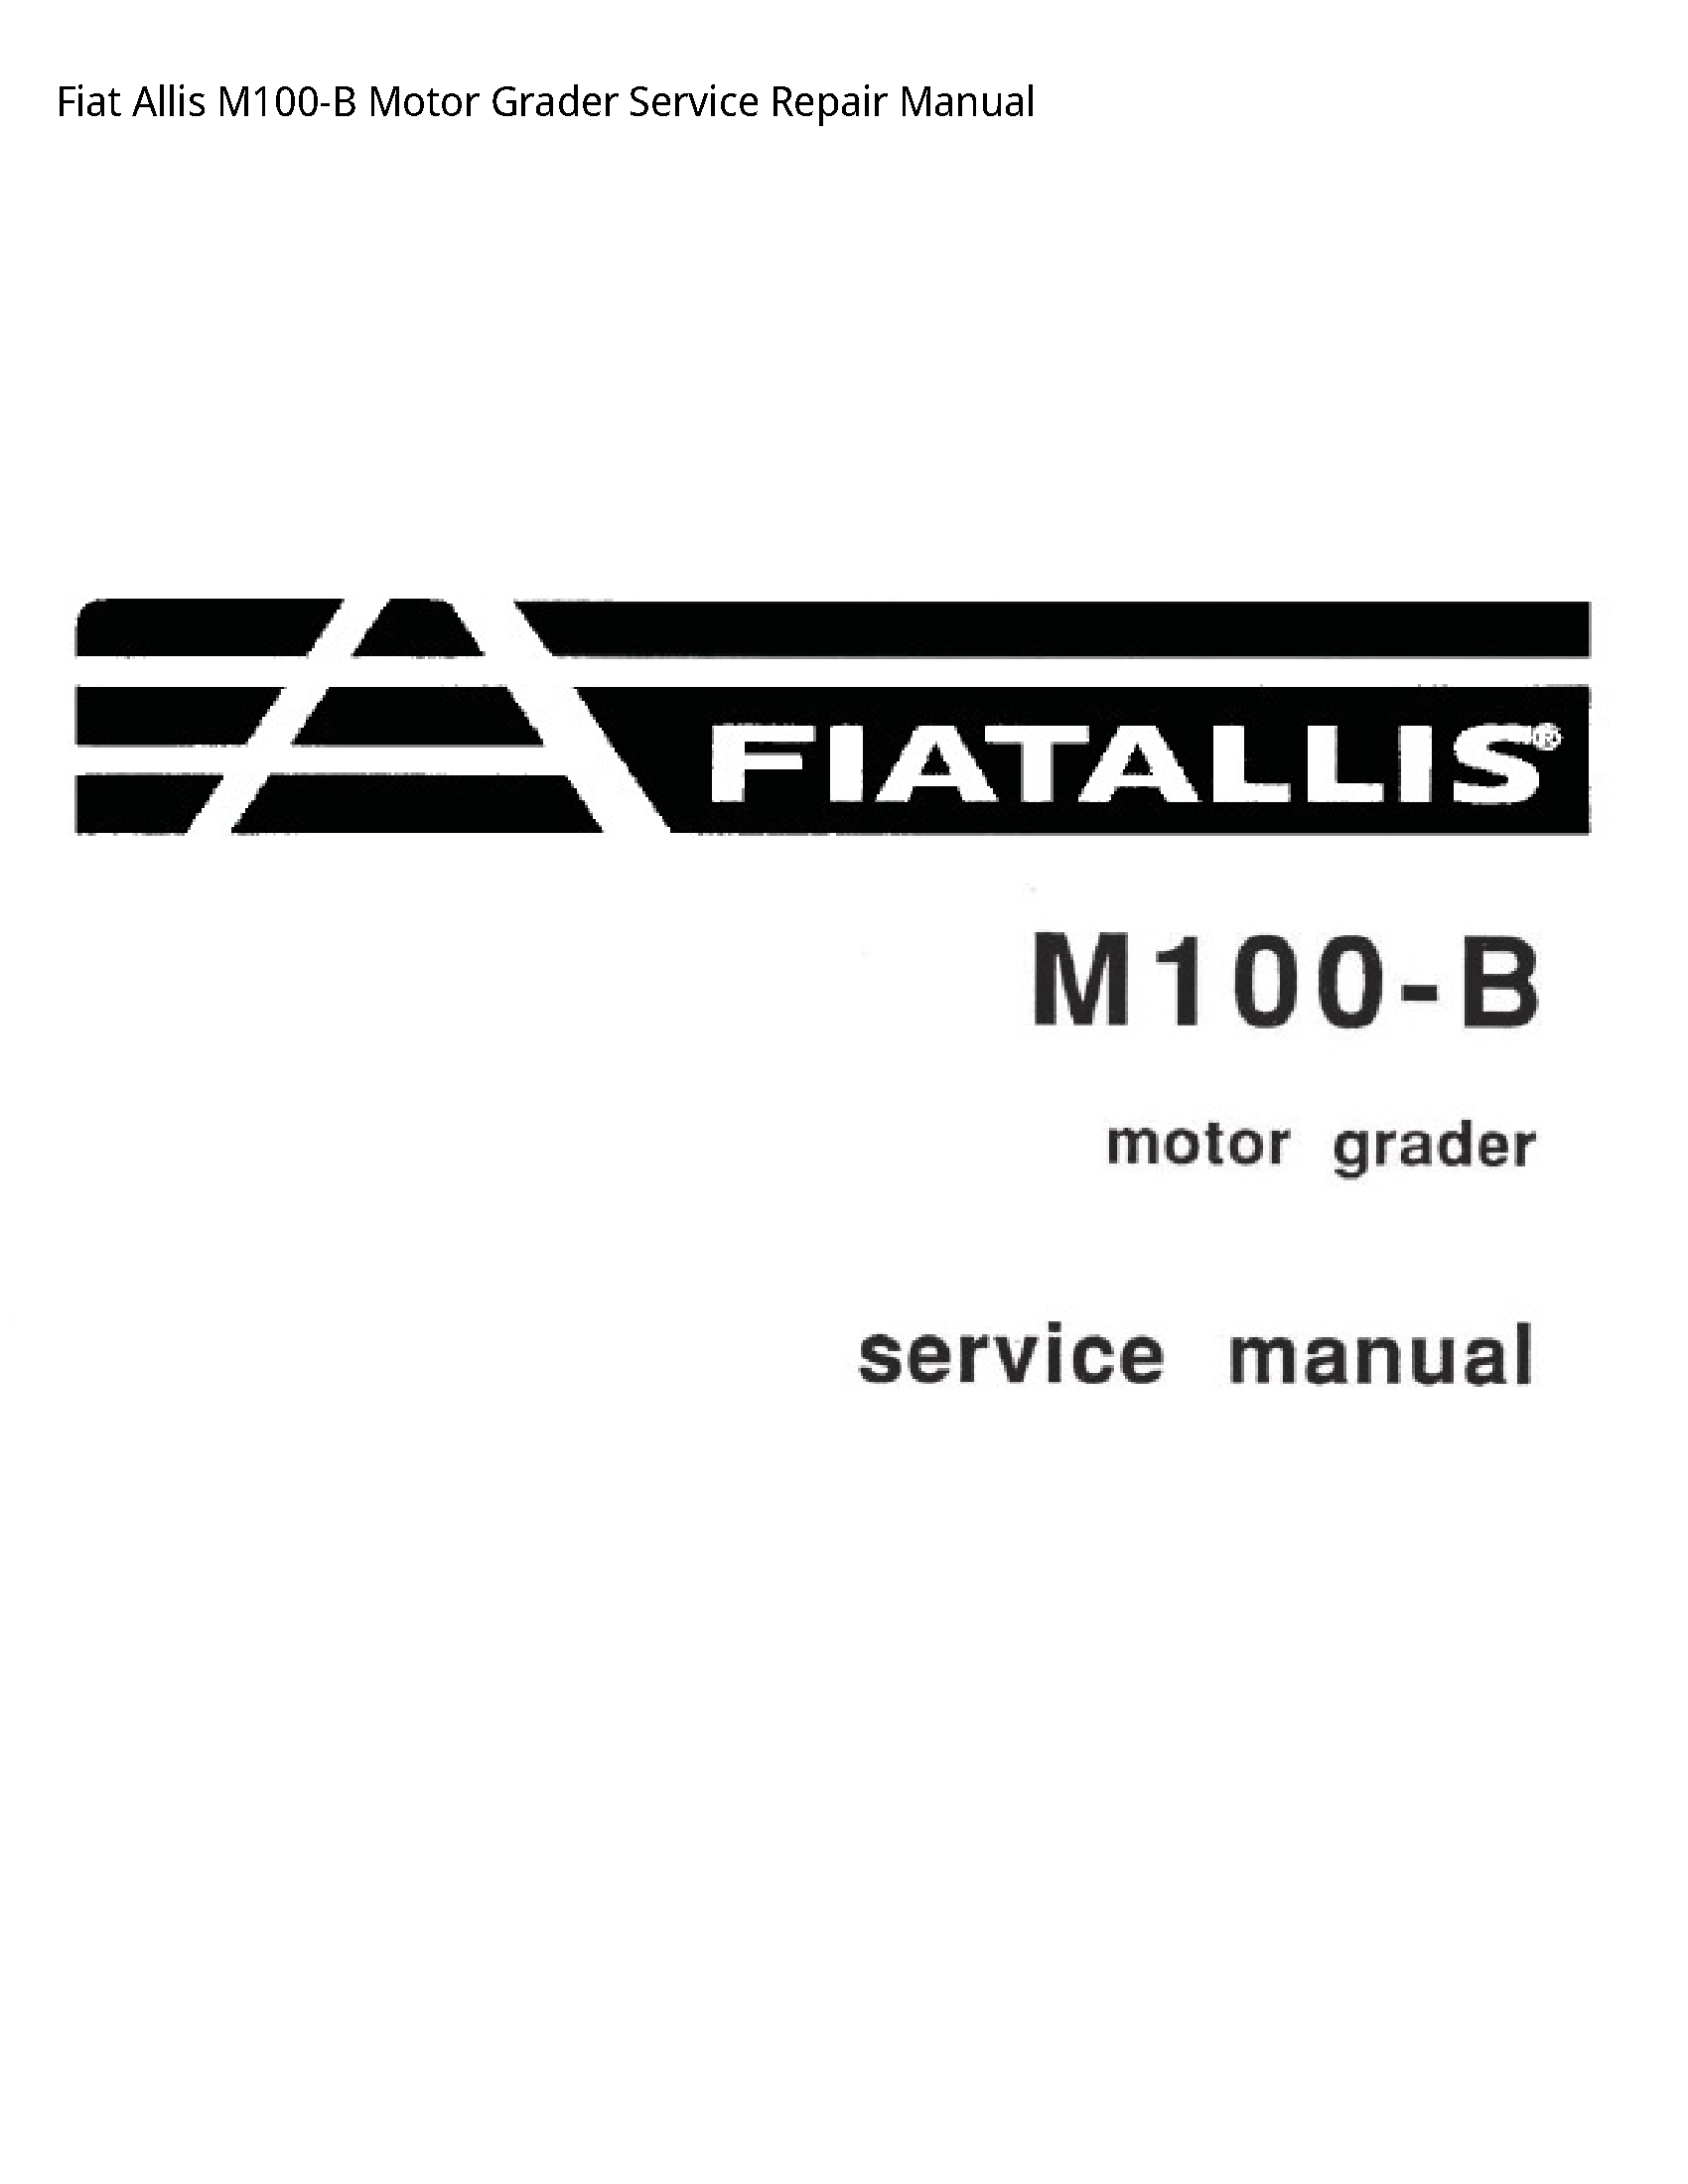 Fiat Allis M100-B Motor Grader manual